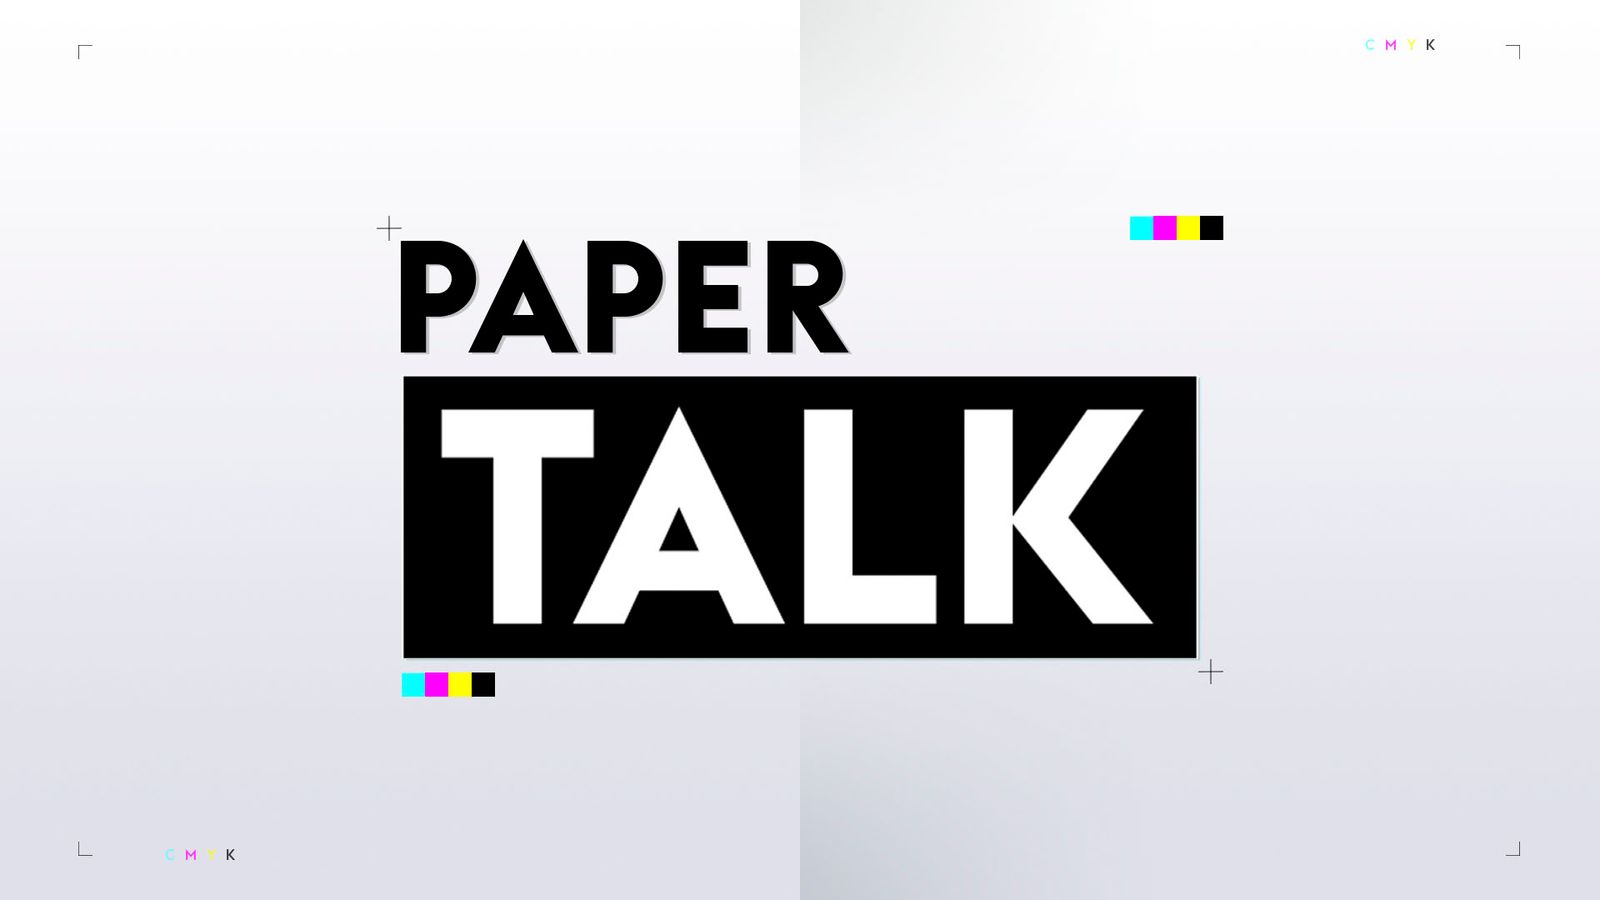 แมนเชสเตอร์ ยูไนเต็ด จับตาการประมูล โจชัว คิมมิช ในเดือนมกราคม – Paper Talk |  ข่าวฟุตบอล